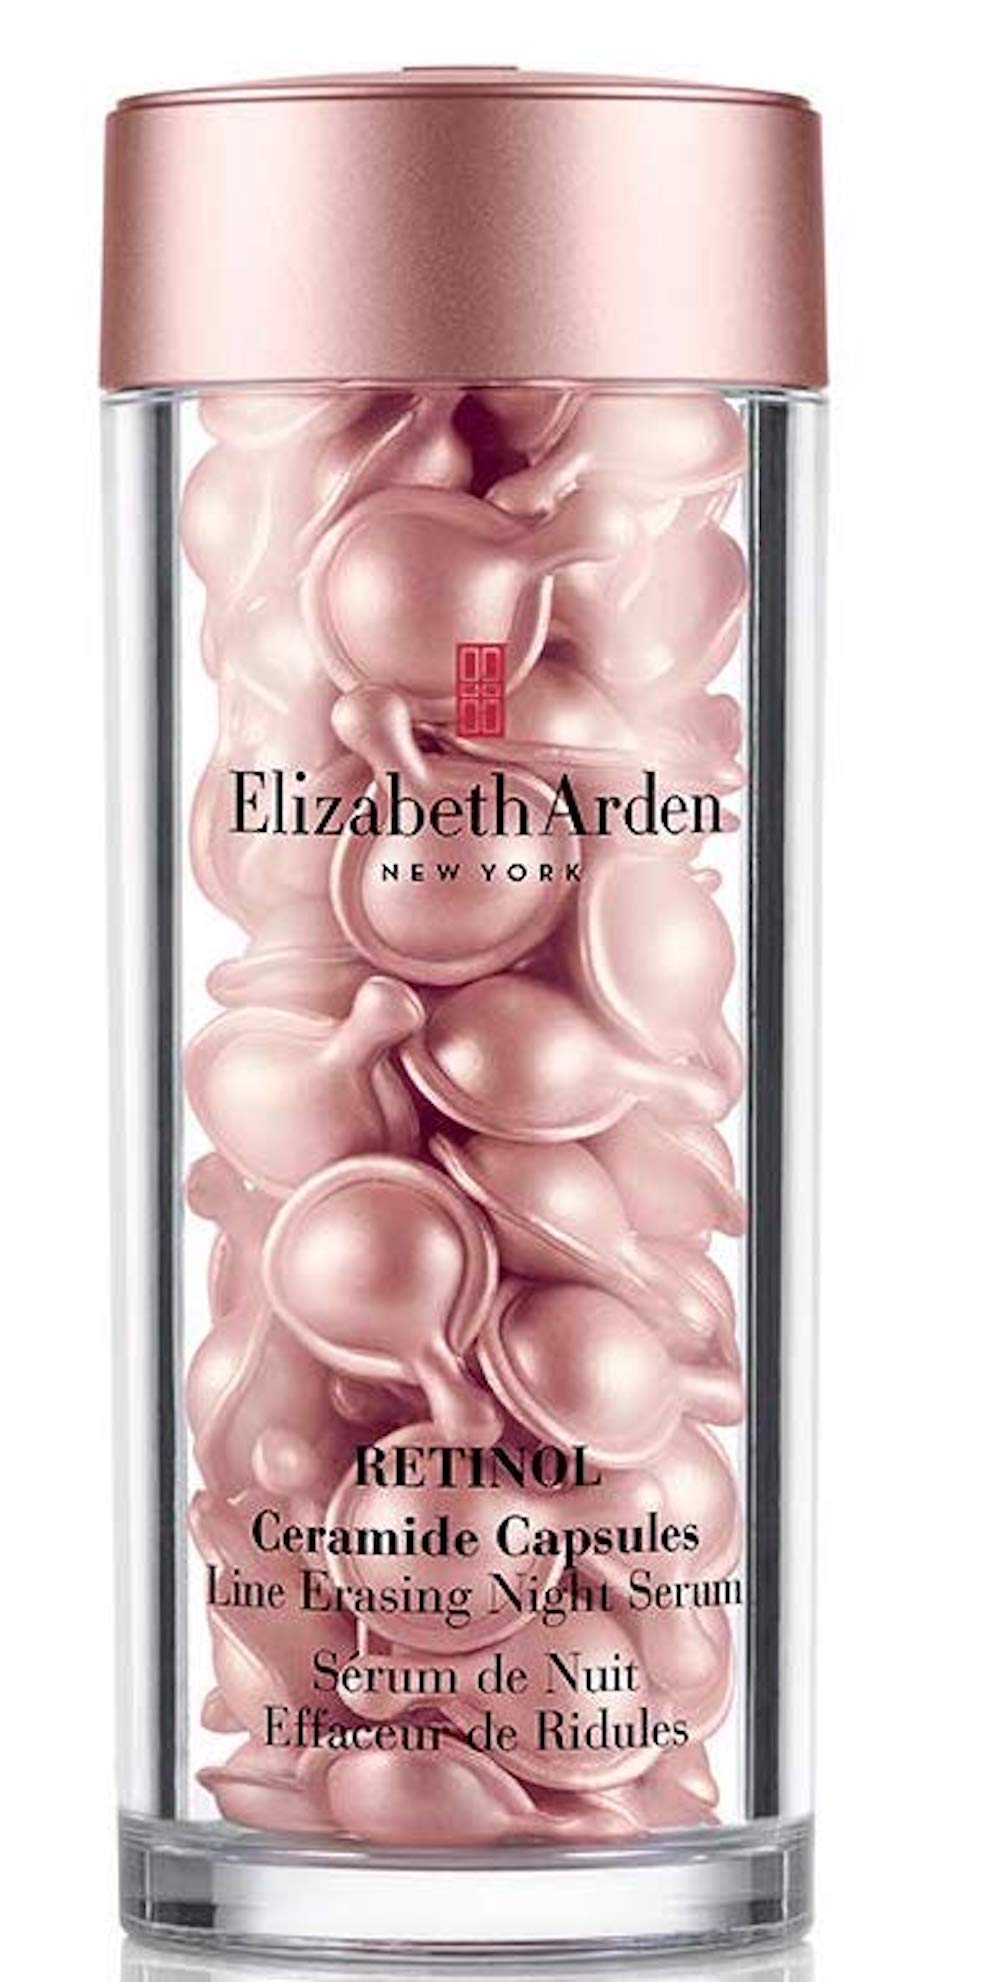 Elizabeth Arden capsules